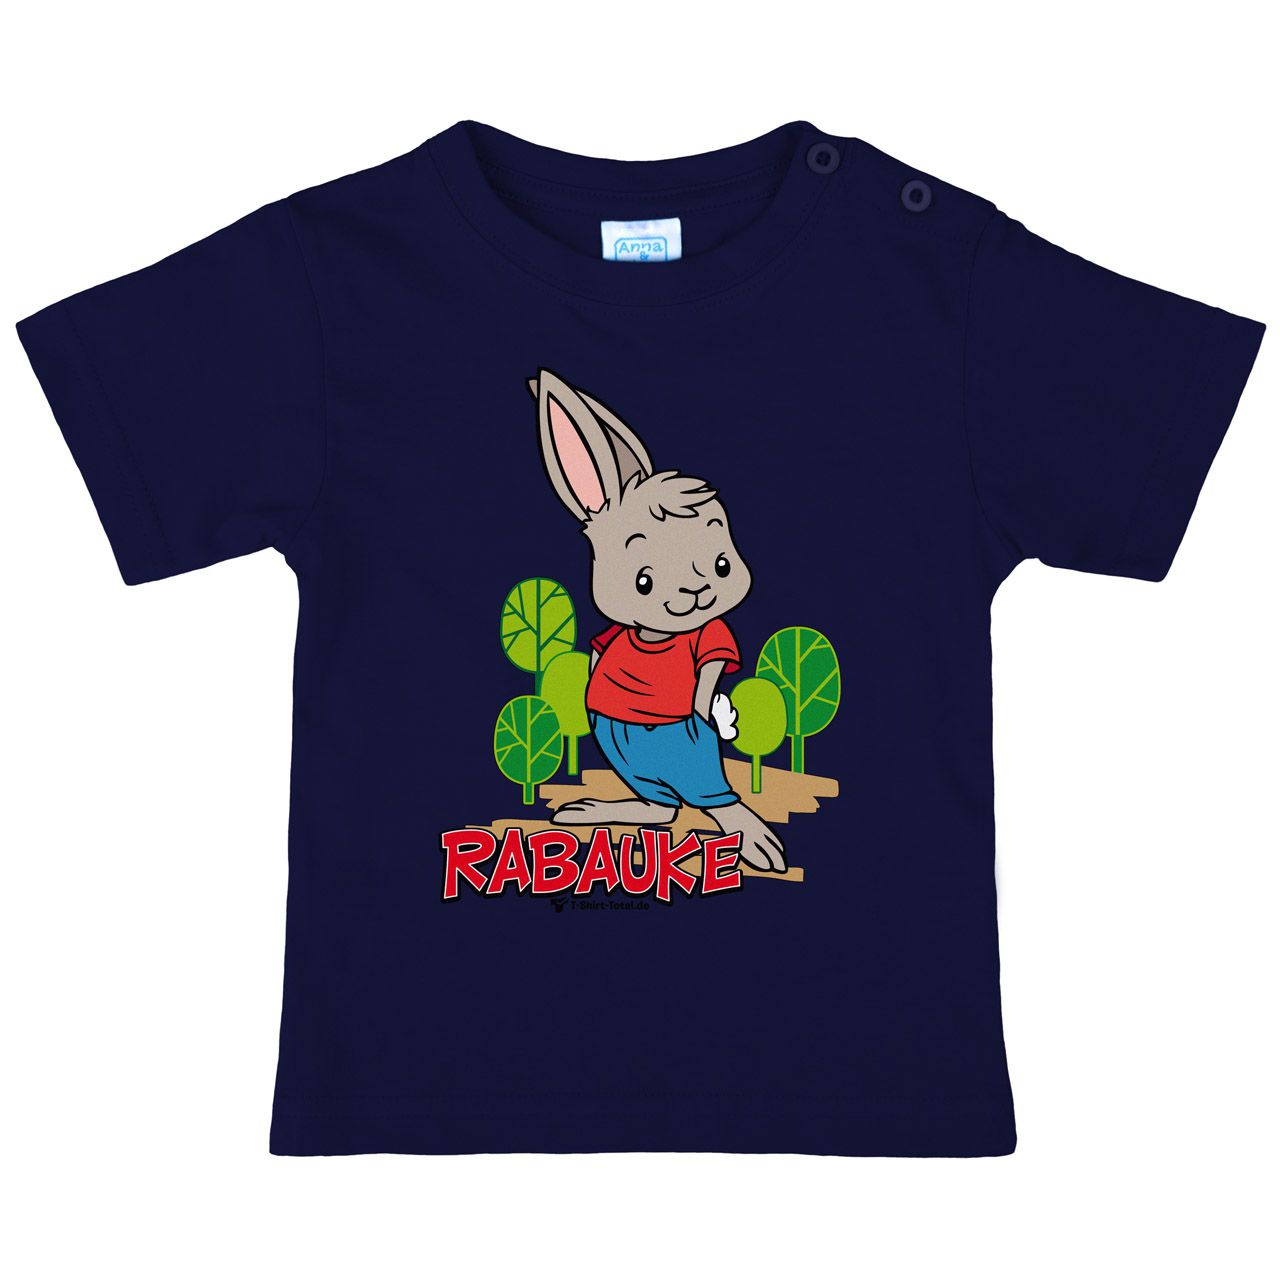 Rabauke Kinder T-Shirt navy 110 / 116